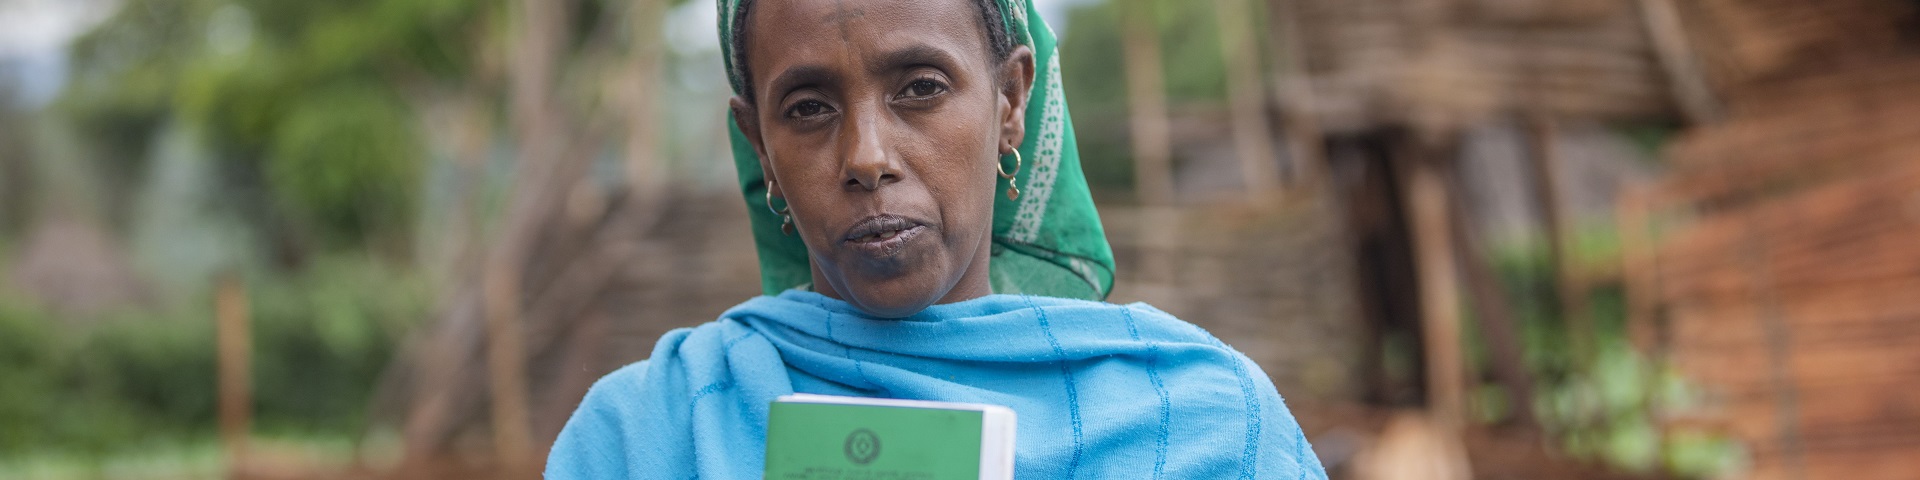 Frontansicht einer äthiopischen Frau die ihr Landzertifikat in die Kamera zeigt.